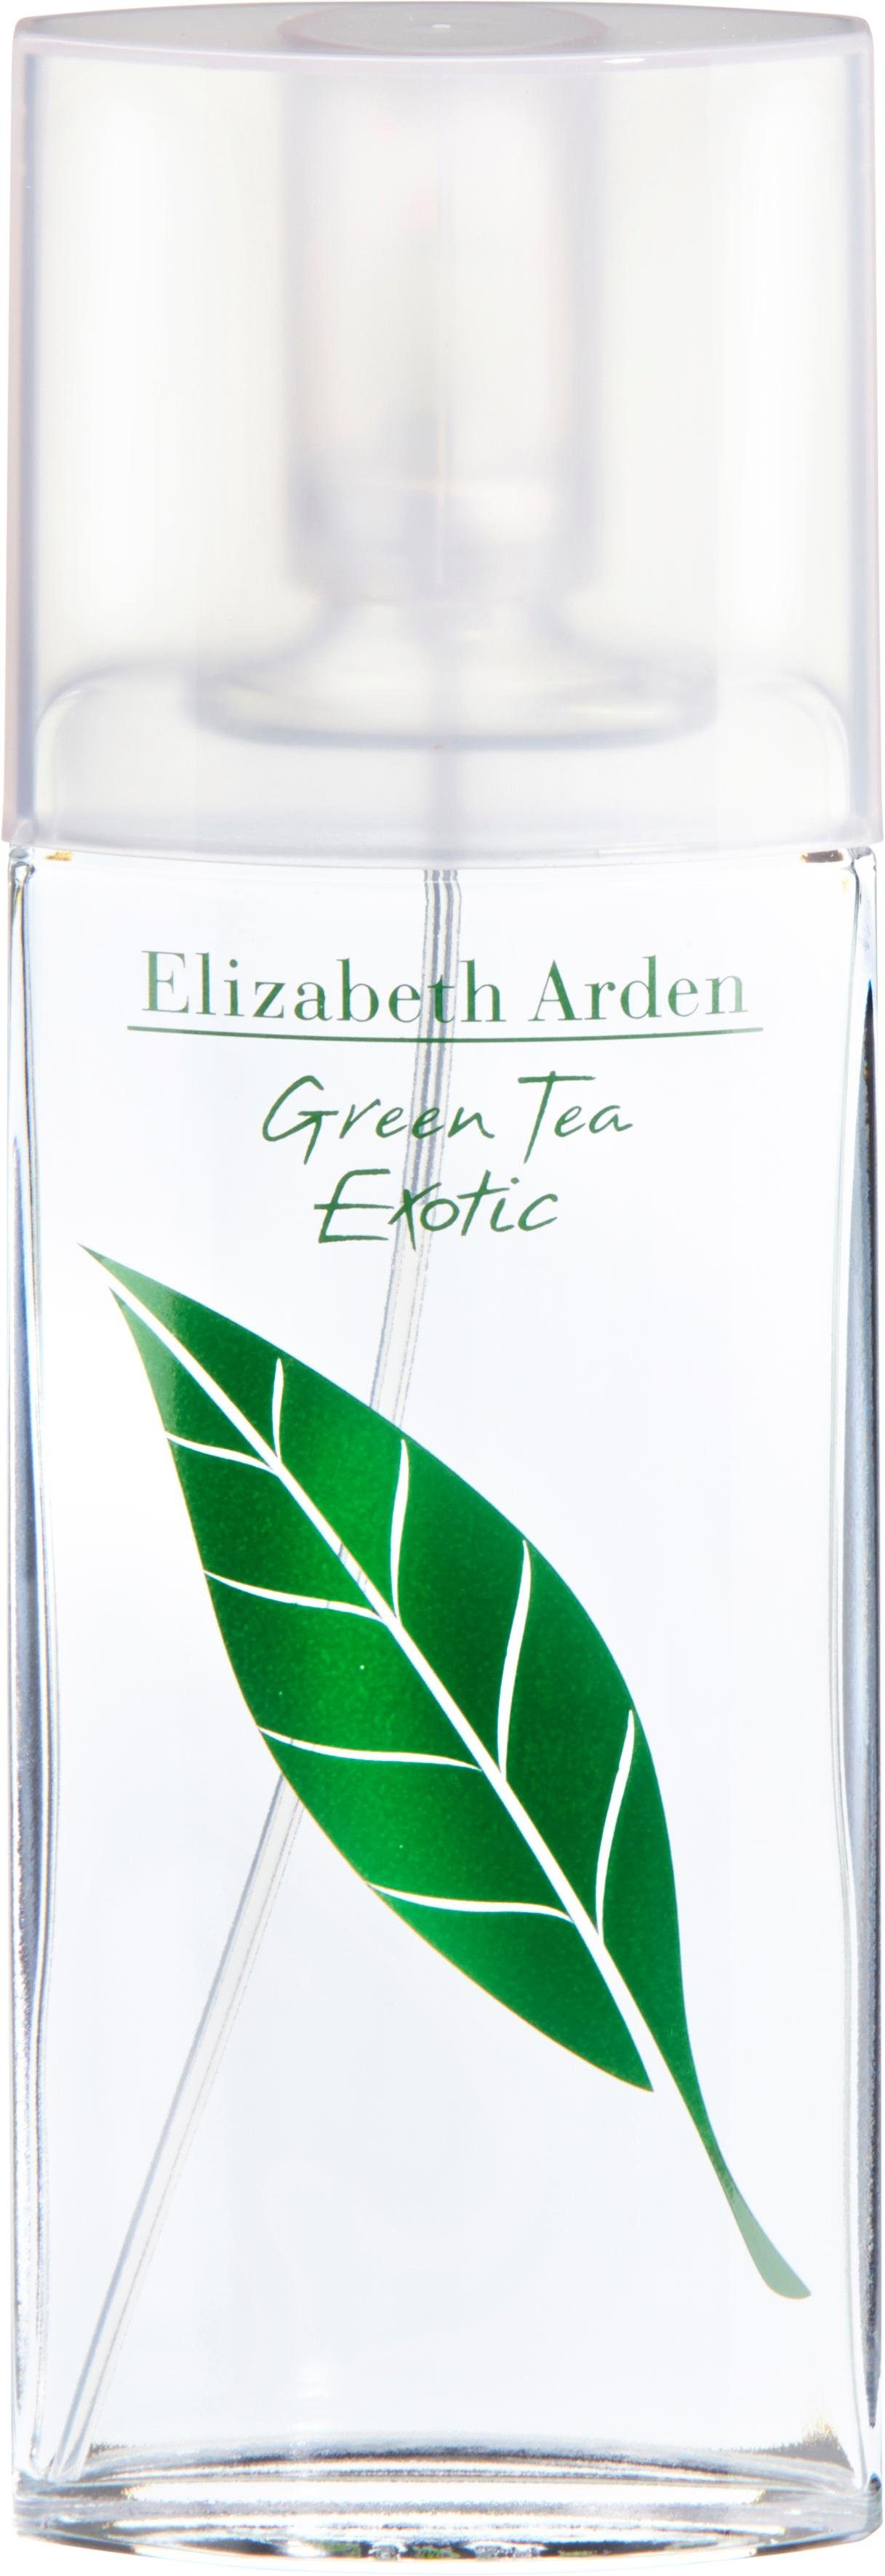 Арден зеленый чай духи. Парфюм зеленый чай Элизабет Арден. Духи Elizabeth Arden Green Tea. Туалетная вода Элизабет Арден зеленый чай. Элизабет Арден Парфюм Грин Теа.